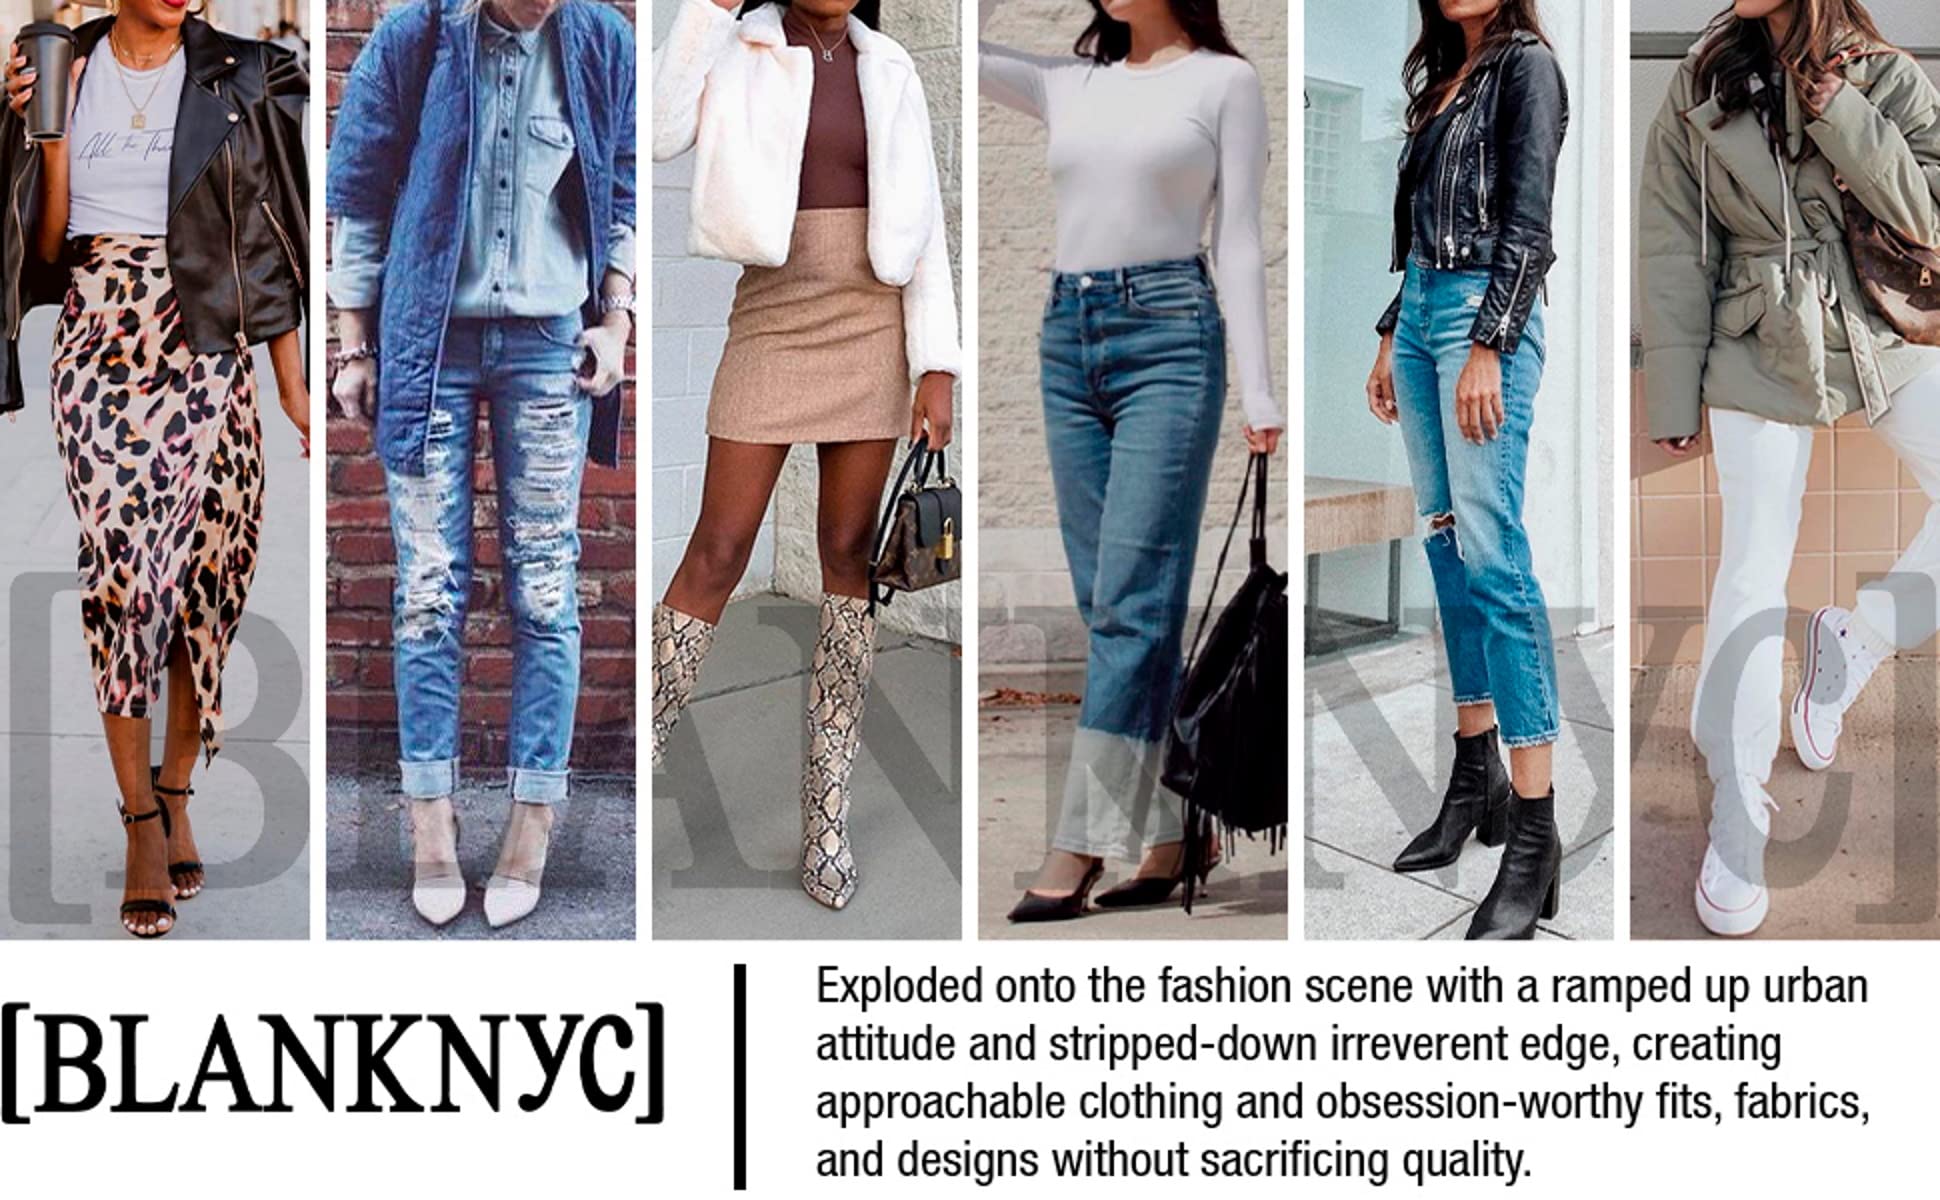 [BLANKNYC] womens Luxury Clothing Plaid Shirt Jacket, Stylish Shacket & Trendy Coat